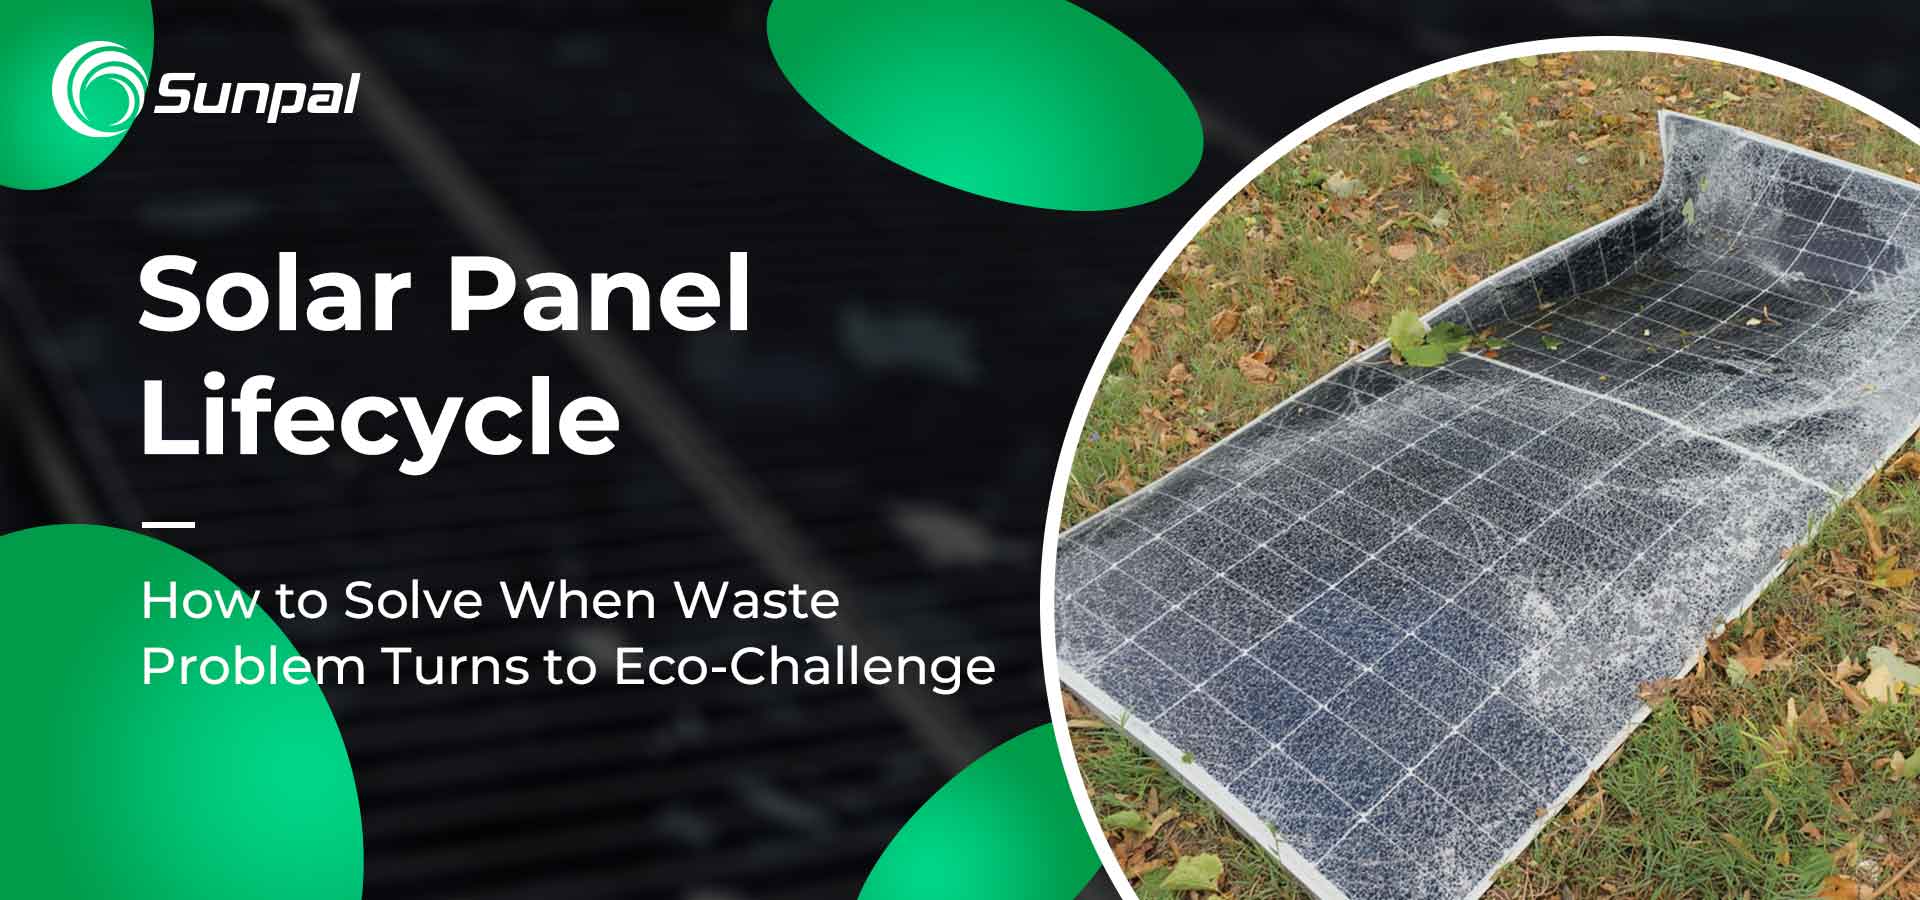 Ciclo de vida do painel solar: problema de resíduos transforma-se em desafio ecológico